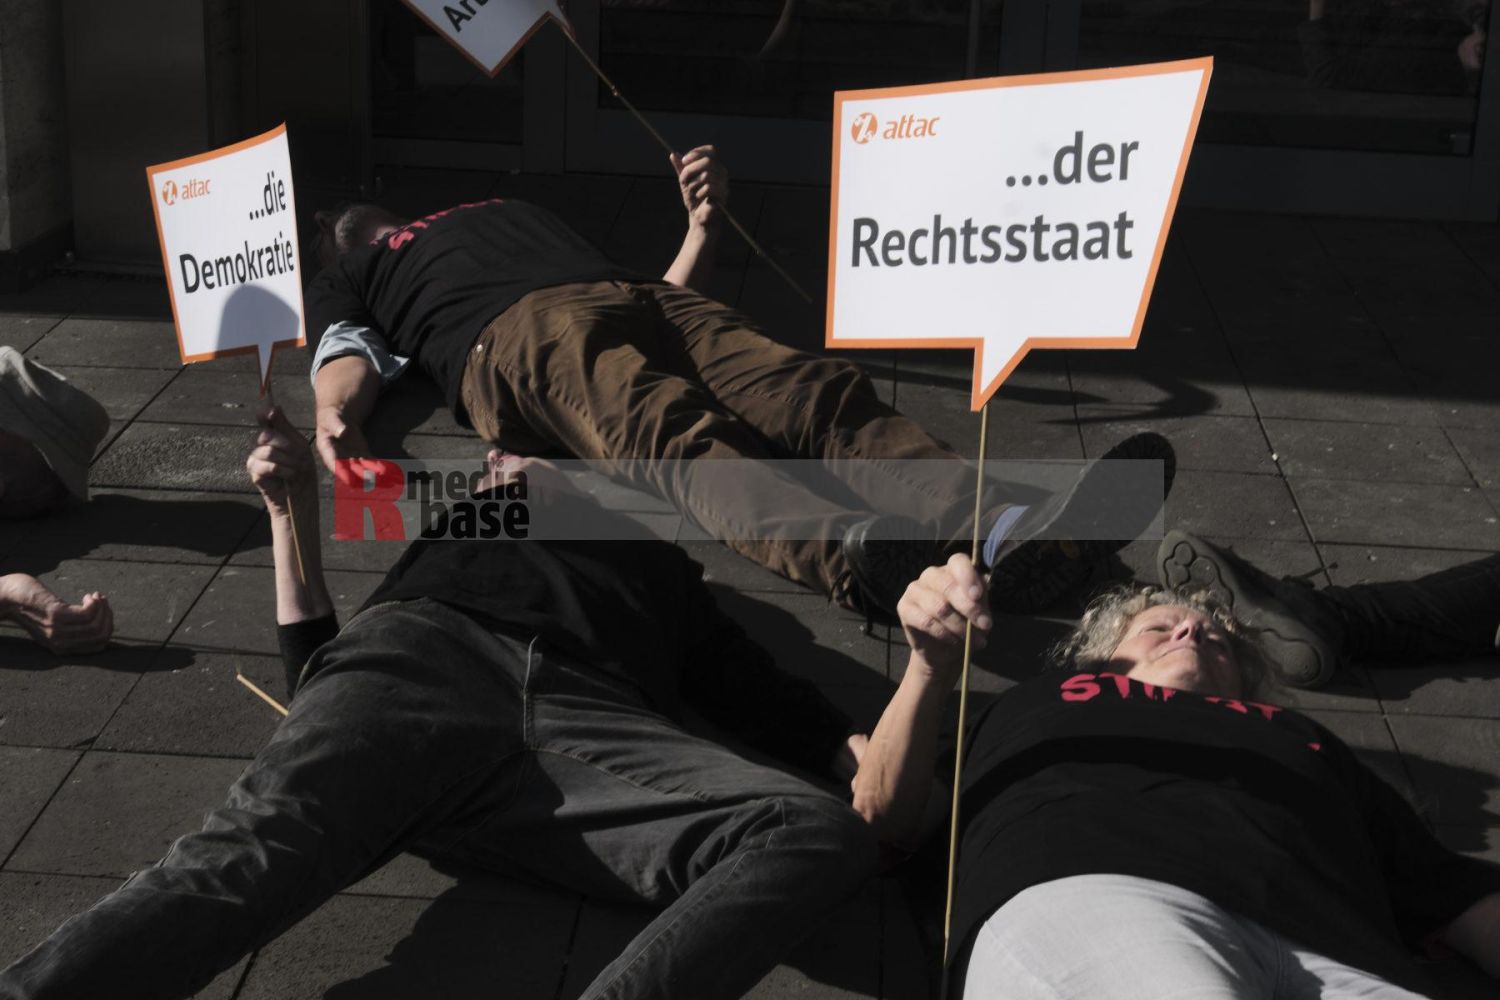 Köln: Protest gegen die bevorstehende CETA-Ratifizierung durch die Ampelkoalition <i>Bild Hans-Dieter Hey/R-mediabase</i> <br><a href=/confor2/?bld=69210&pst=69189&aid=14&dc=0320&i1=Hans-Dieter%20Hey/R-mediabase>Anfrage Download Bild 69210</a>  <a href=/wp-admin/post.php?post=69210&action=edit> / Edit</a><br><a href=/?p=69189>Zum Beitrag 69189</a>